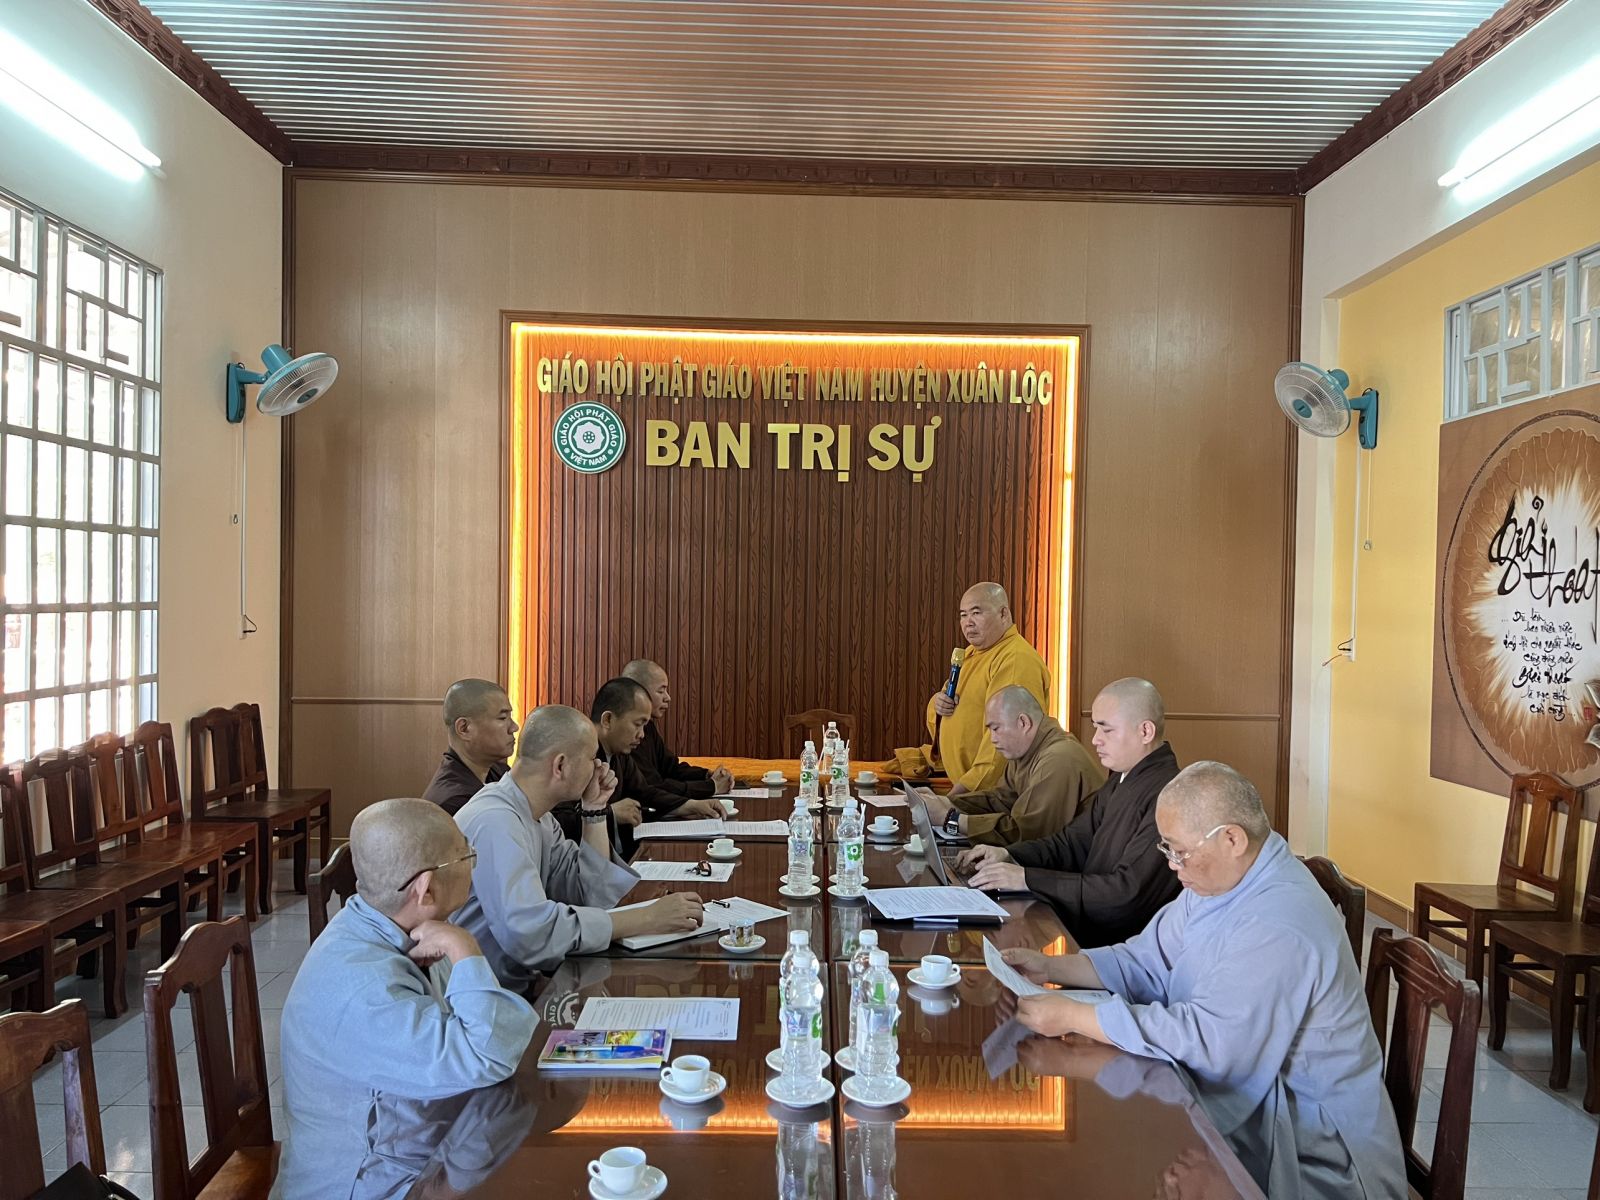 Đồng Nai: Thường trực Ban Trị sự Phật giáo huyện Xuân Lộc họp triển khai kế hoạch hội nghị tổng kết Phật sự năm 2022